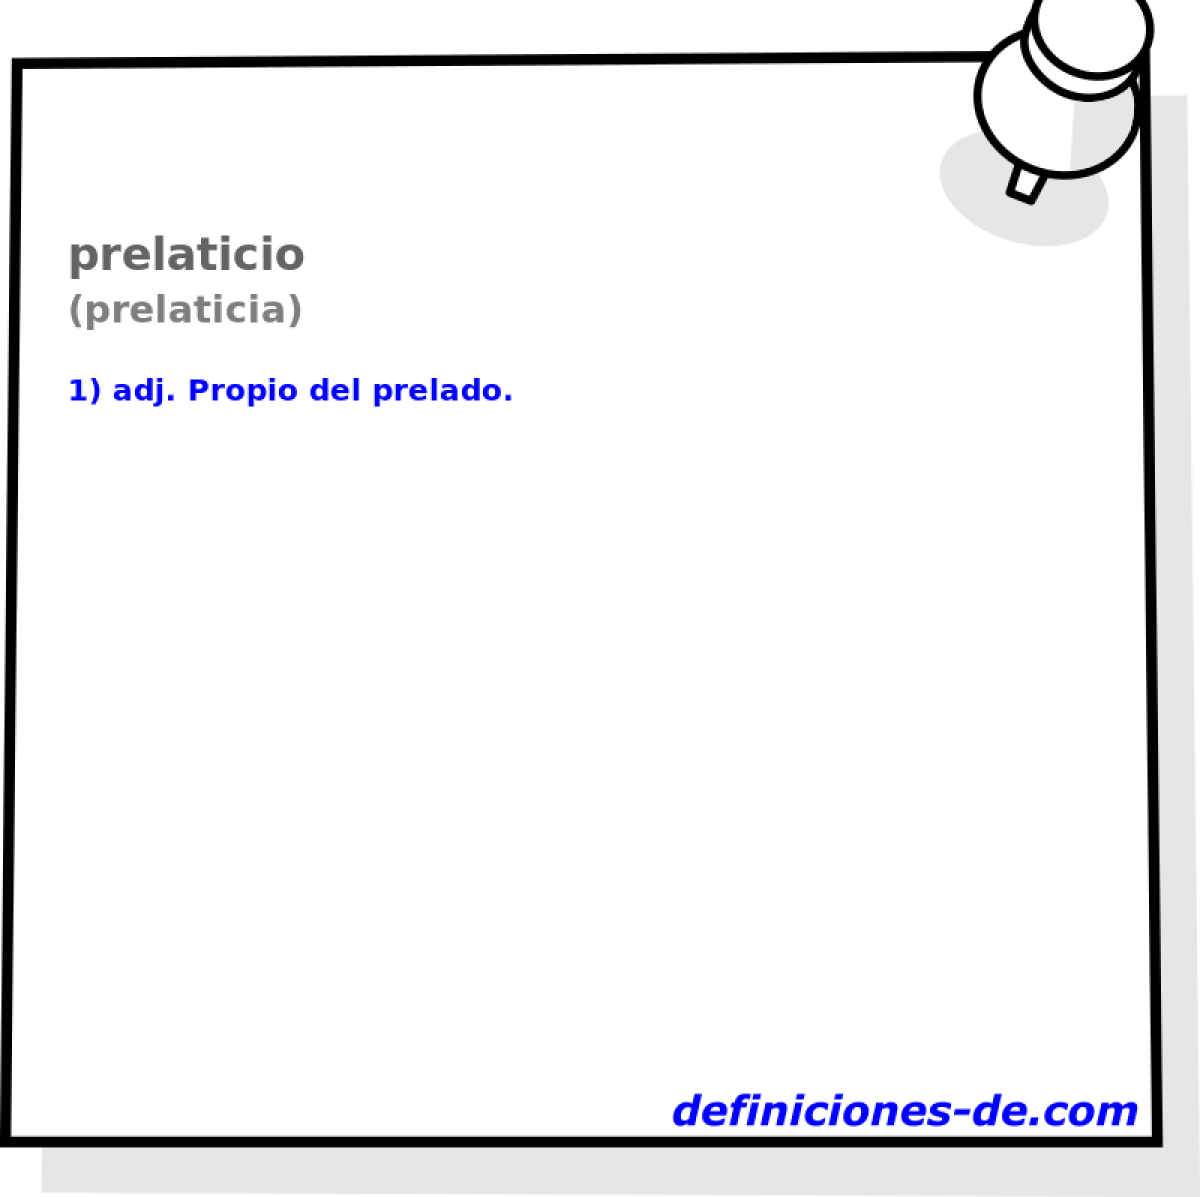 prelaticio (prelaticia)